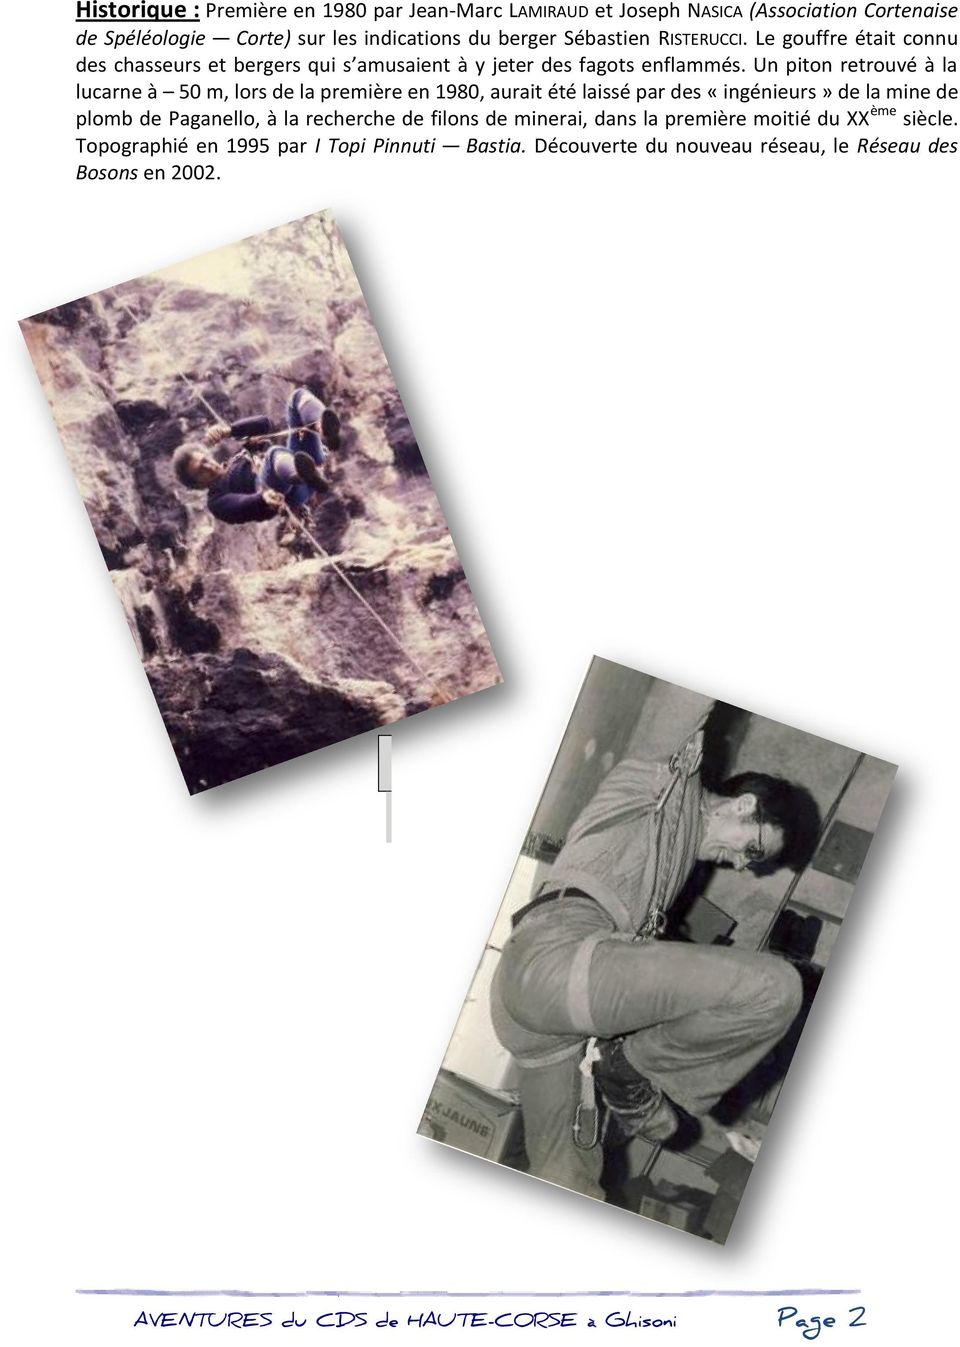 Un piton retrouvé à la lucarne à 50 m, lors de la première en 1980, aurait été laissé par des «ingénieurs» de la mine de plomb de Paganello, à la recherche de